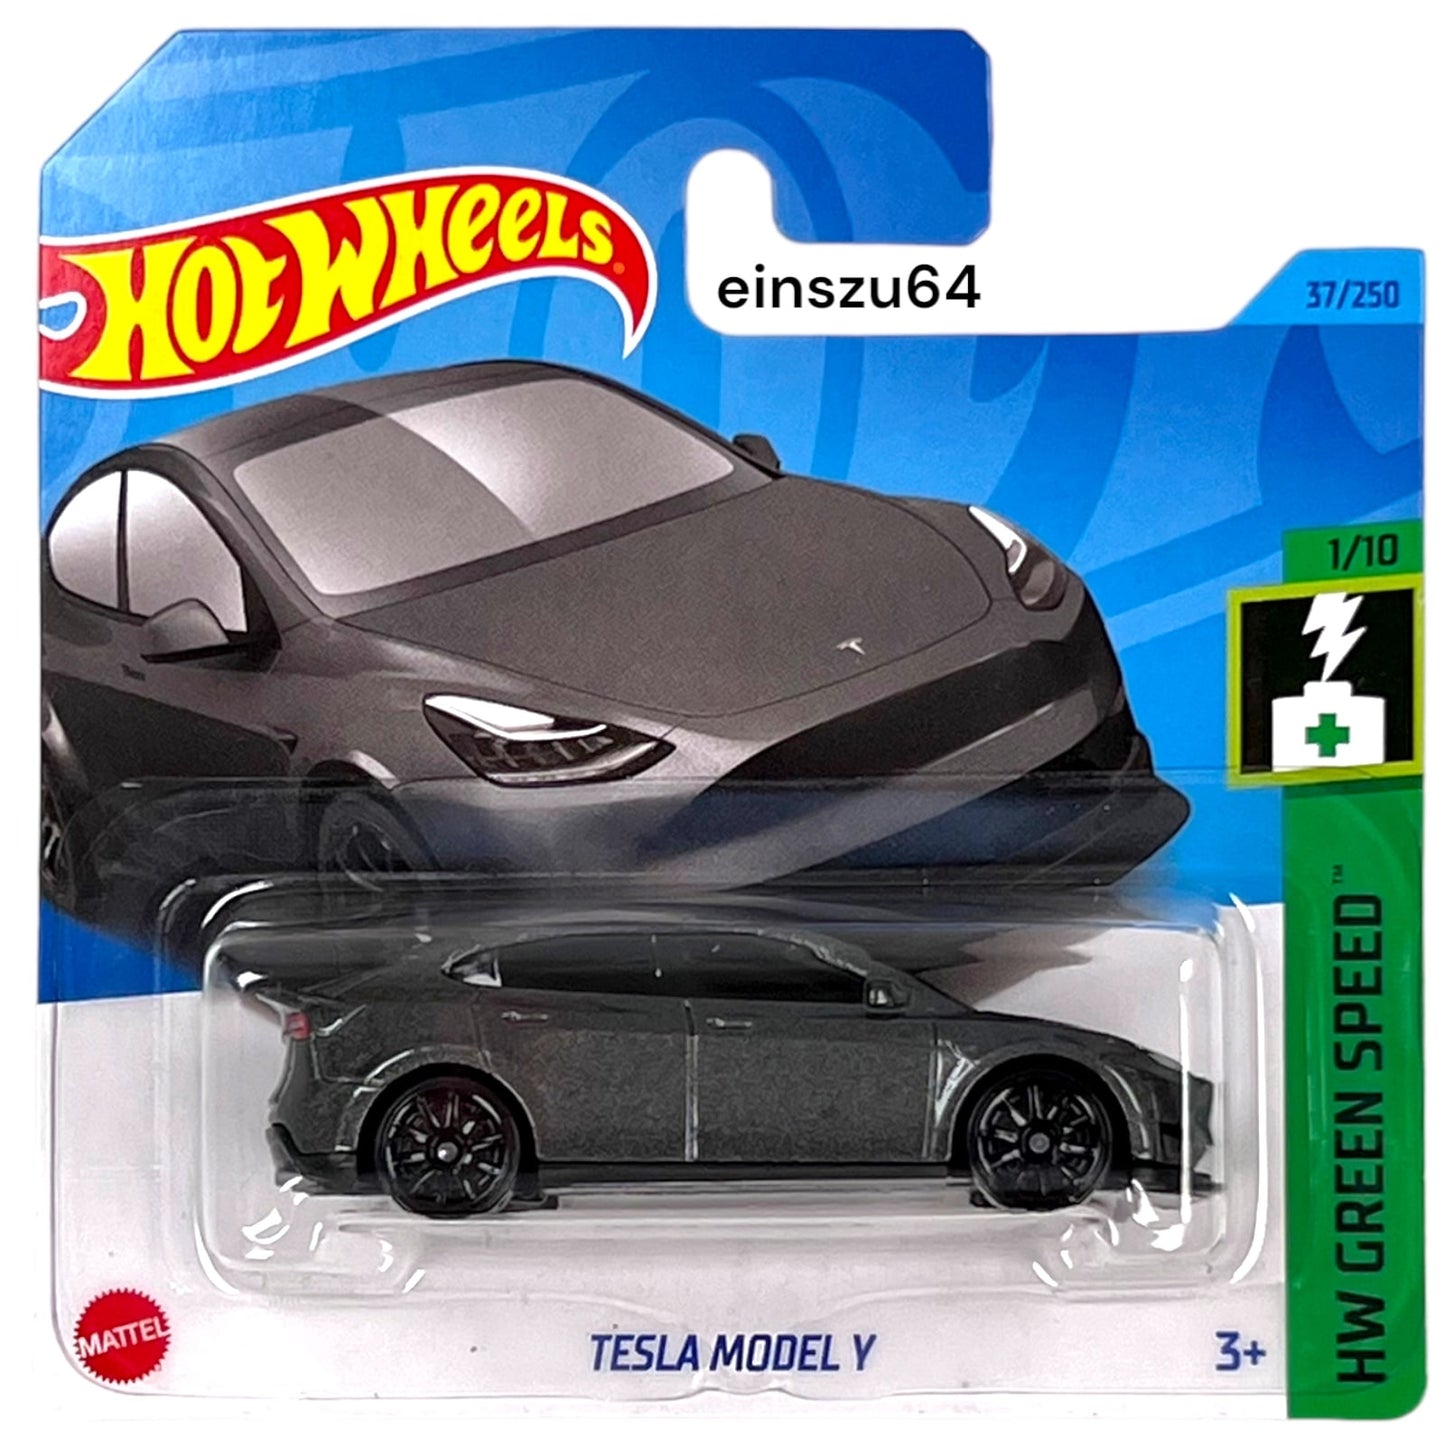 Hot Wheels 2023 - Tesla Model Y - Green Speed 1/10 - HKK20 - 37/250 - –  einszu64